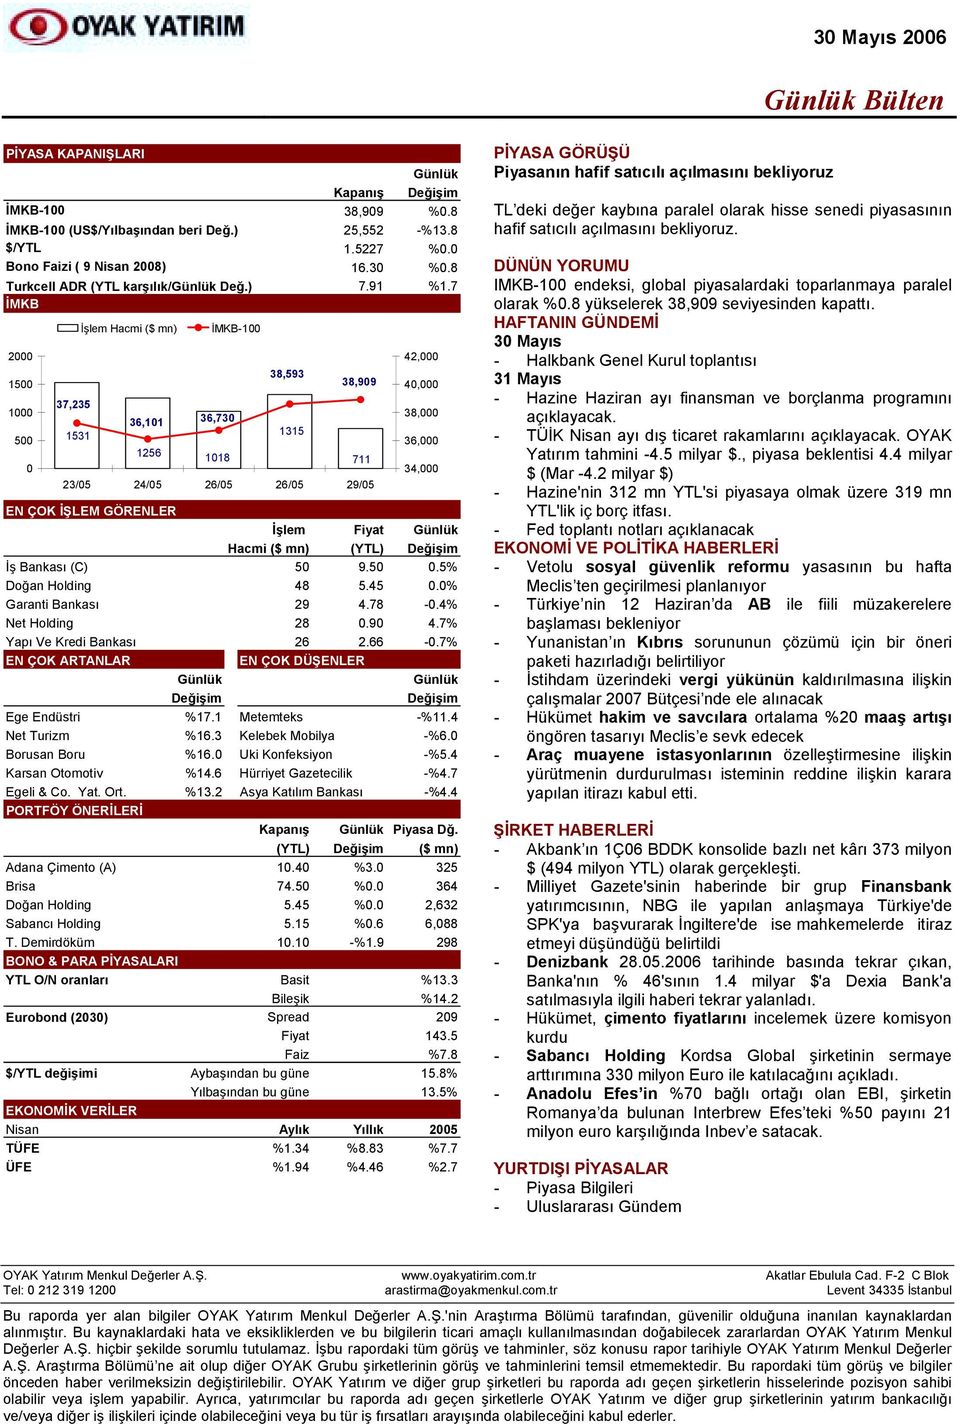 5% Doğan Holding 48 5.45 0.0% Garanti Bankasõ 29 4.78-0.4% Net Holding 28 0.90 4.7% Yapõ Ve Kredi Bankasõ 26 2.66-0.7% EN ÇOK ARTANLAR EN ÇOK DÜŞENLER Ege Endüstri %17.1 Metemteks -%11.